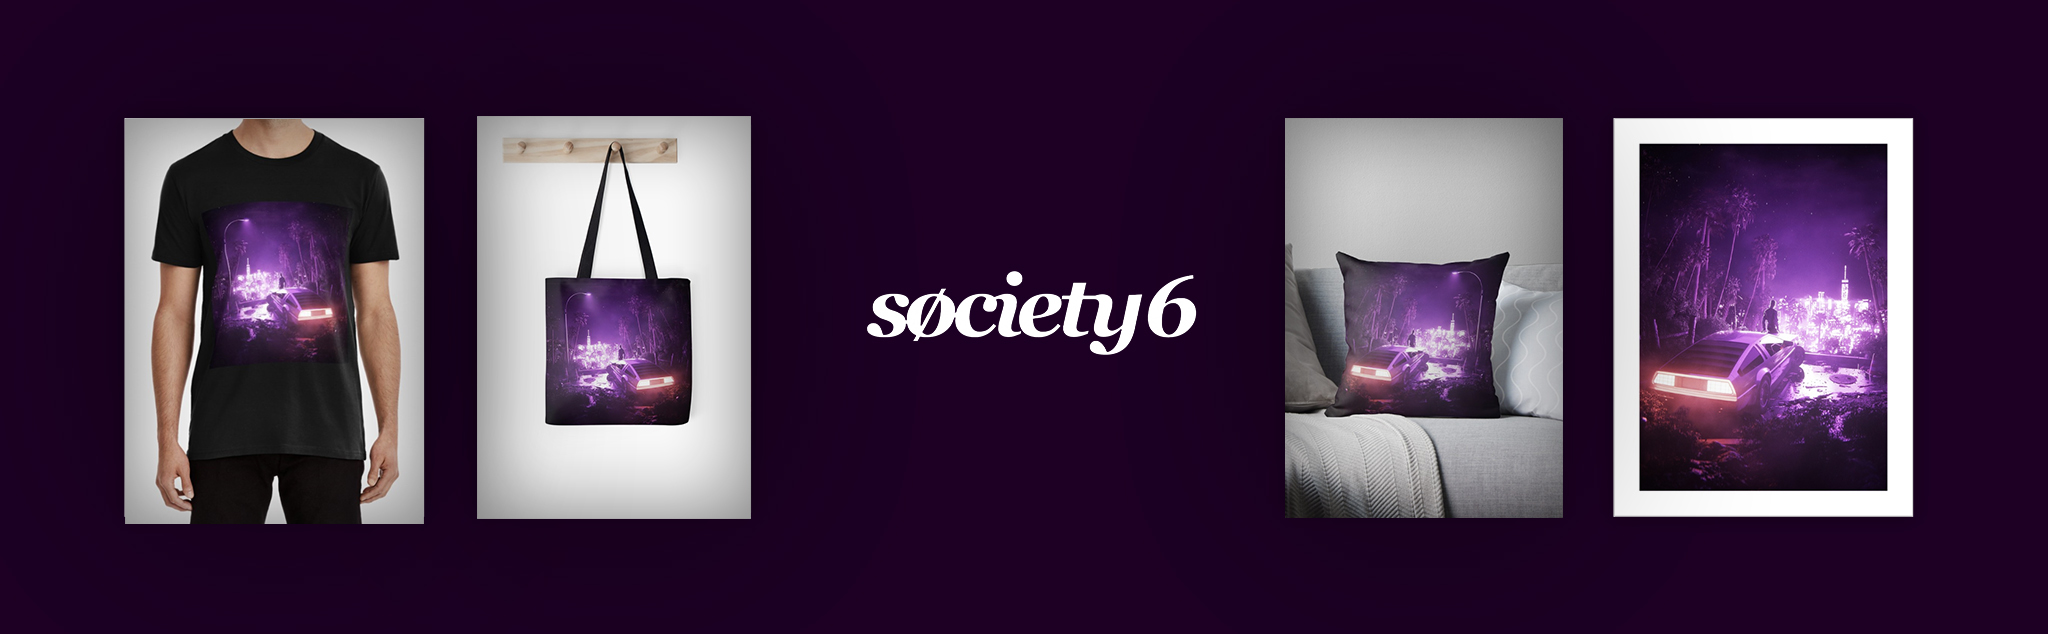 society6-img